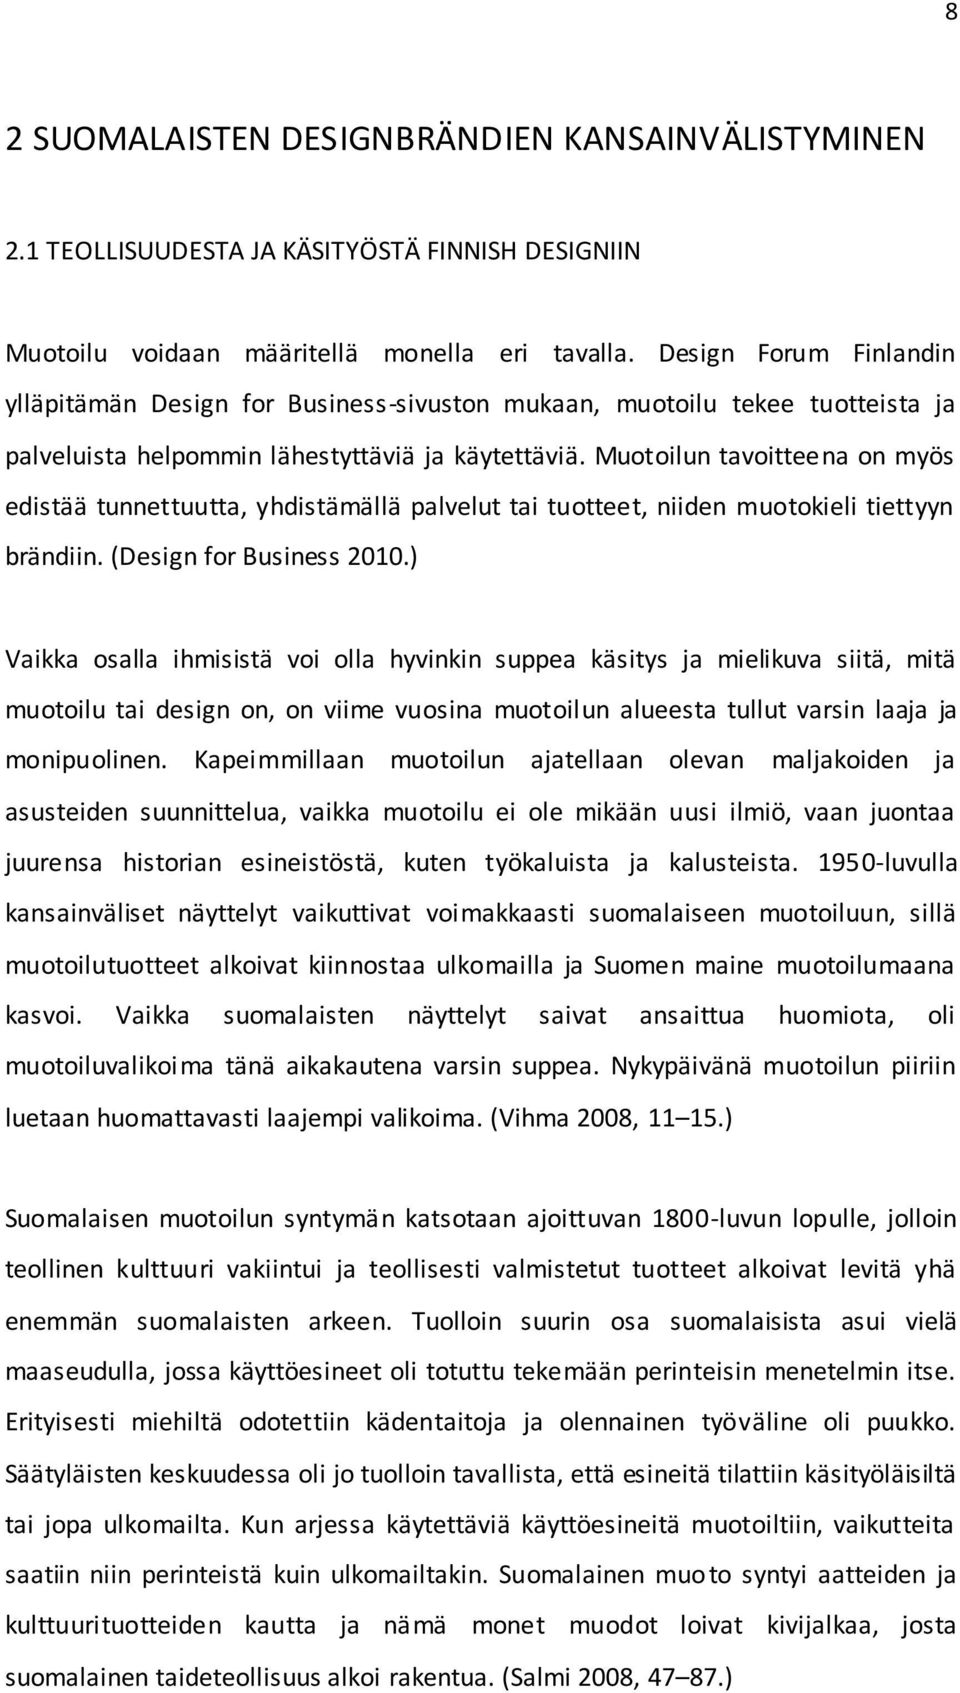 Muotoilun tavoitteena on myös edistää tunnettuutta, yhdistämällä palvelut tai tuotteet, niiden muotokieli tiettyyn brändiin. (Design for Business 2010.